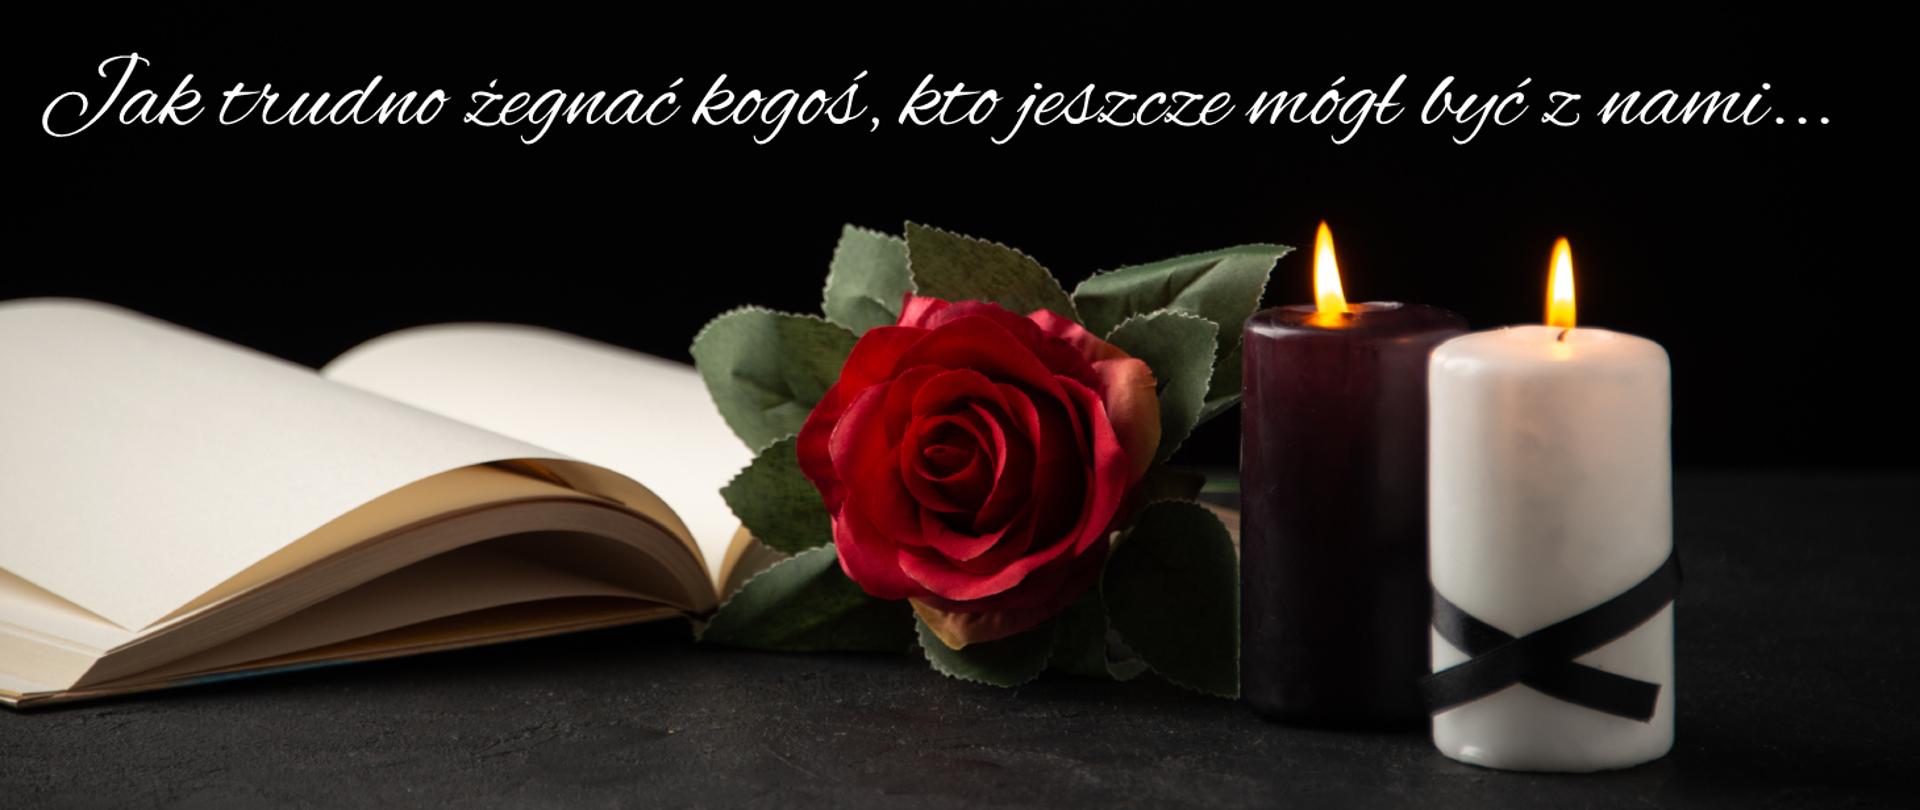 Grafika na czarnym tle, otwarta księga, czerwona róża oraz świece stojące na stole. Na tle napis tak trudno żegnać kogoś, kto jeszcze mógł być z nami.